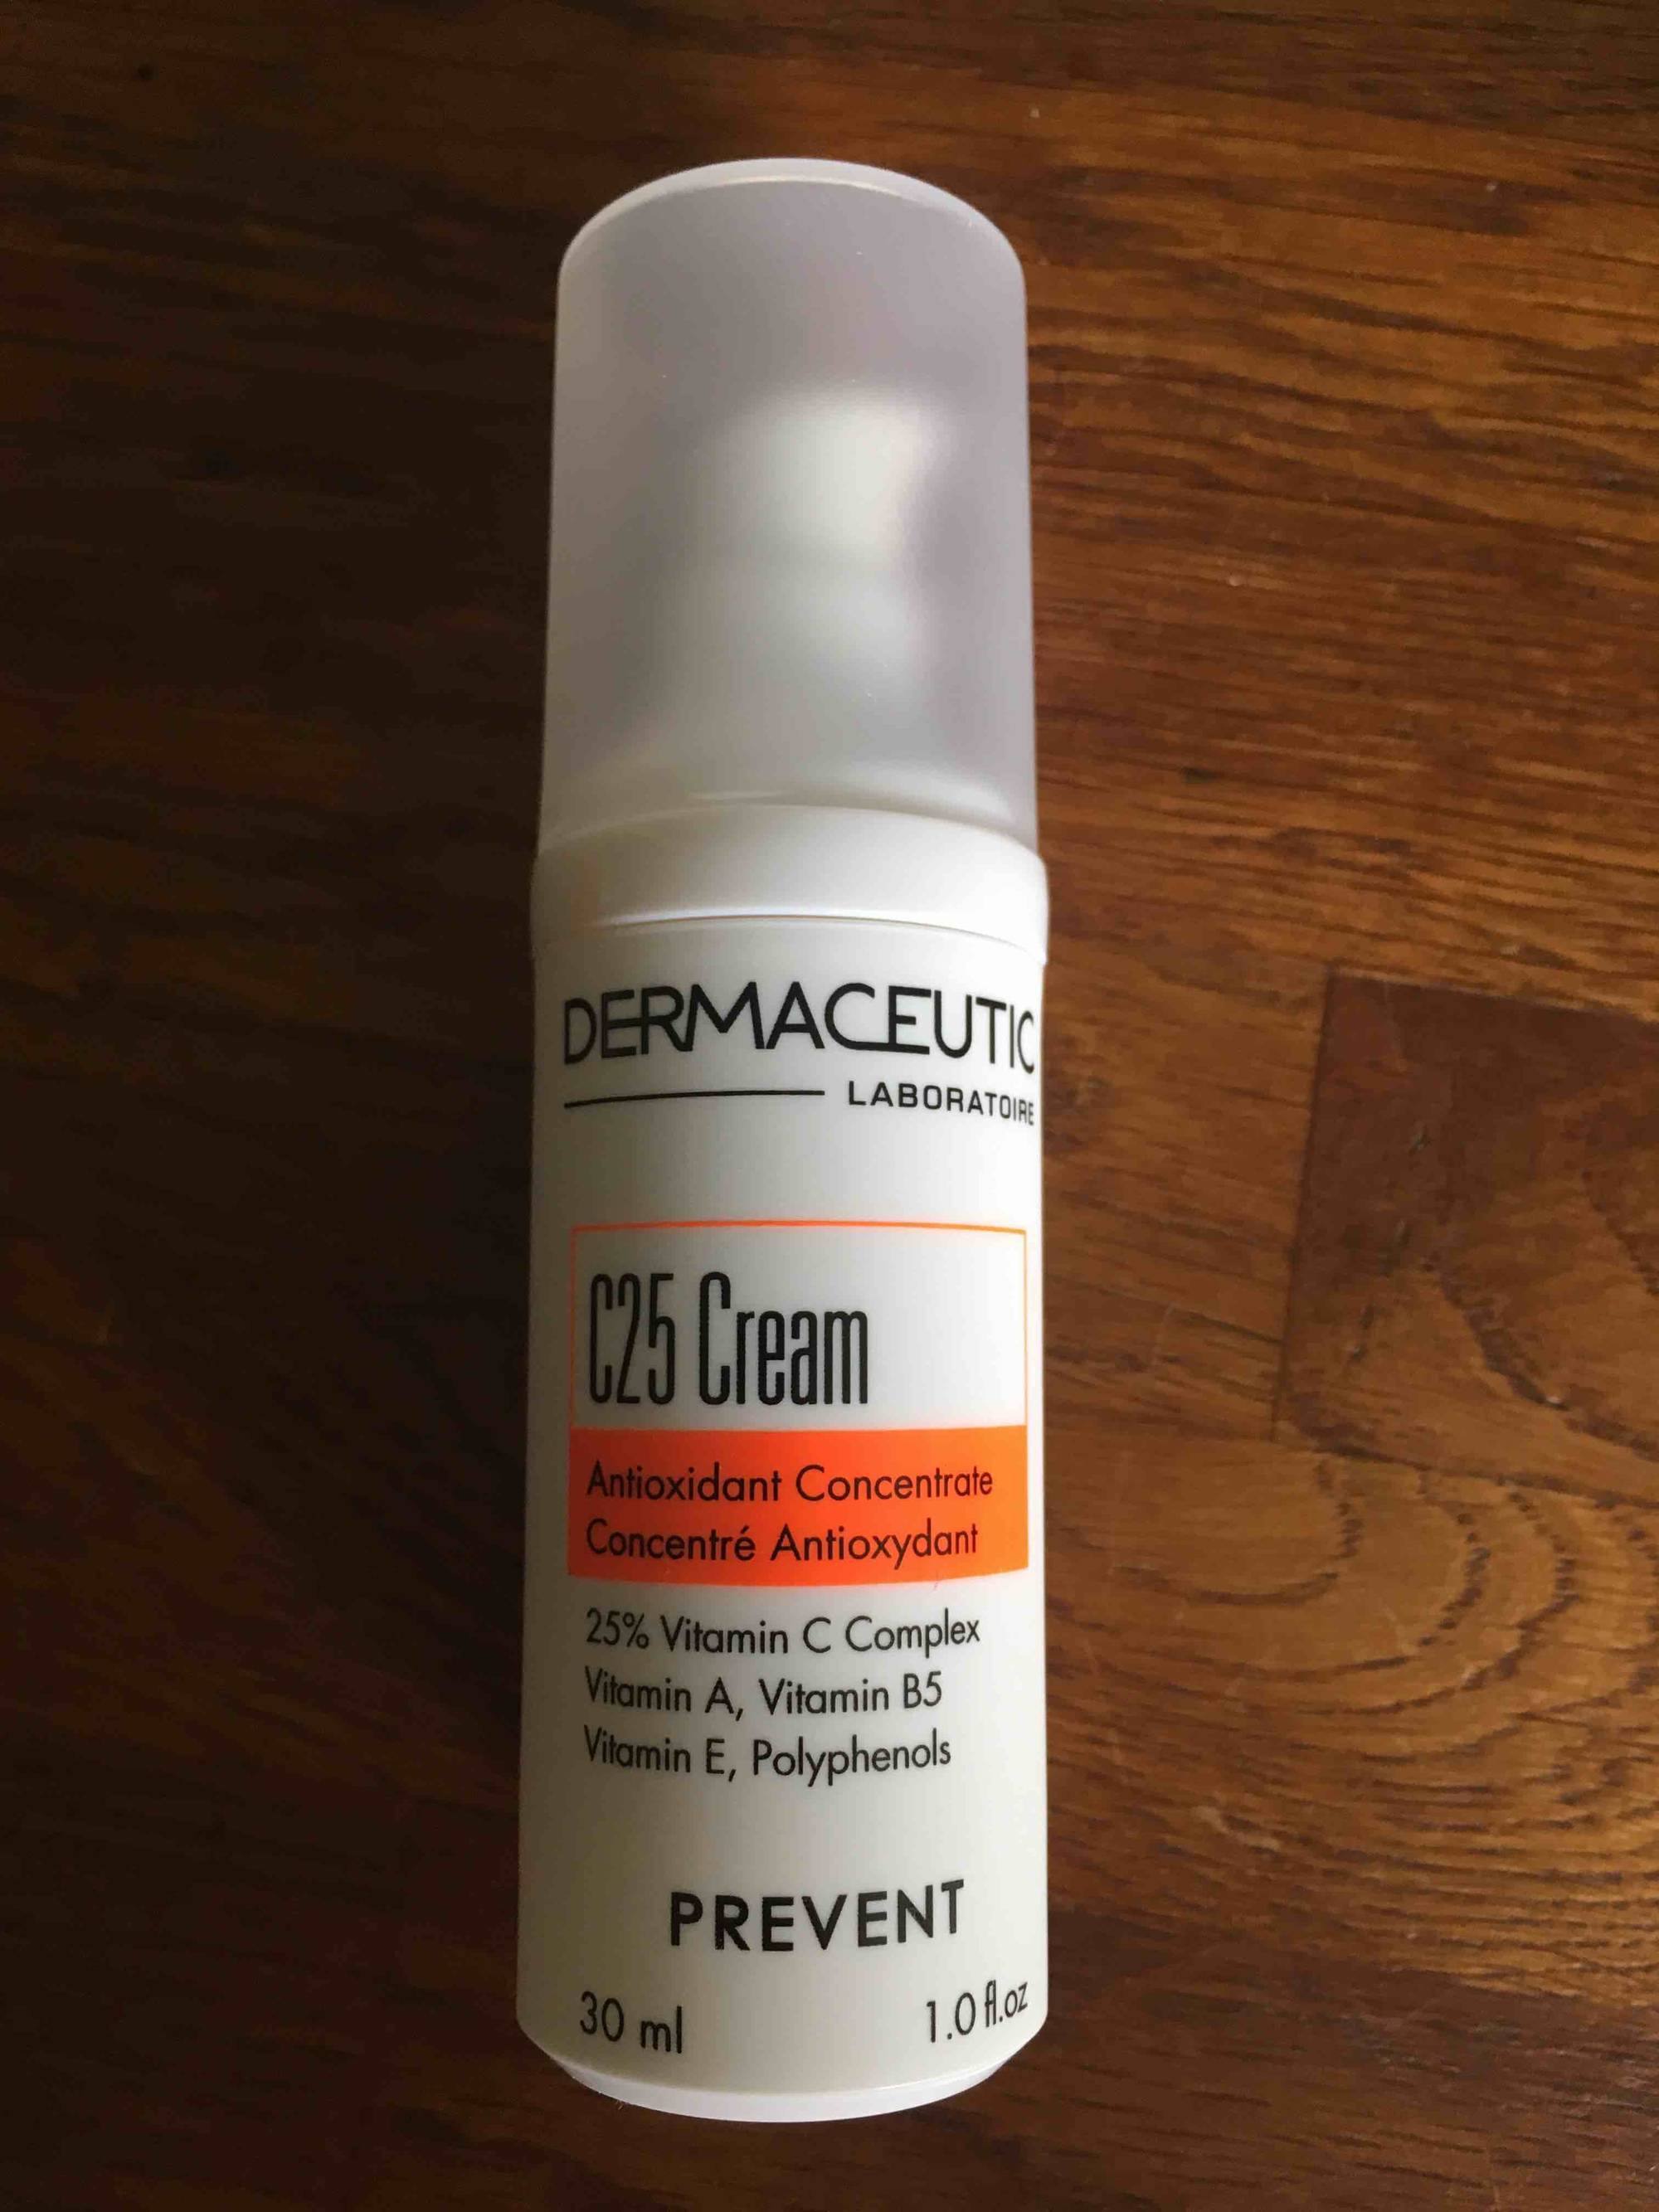 DERMACEUTIC - C25 Cream